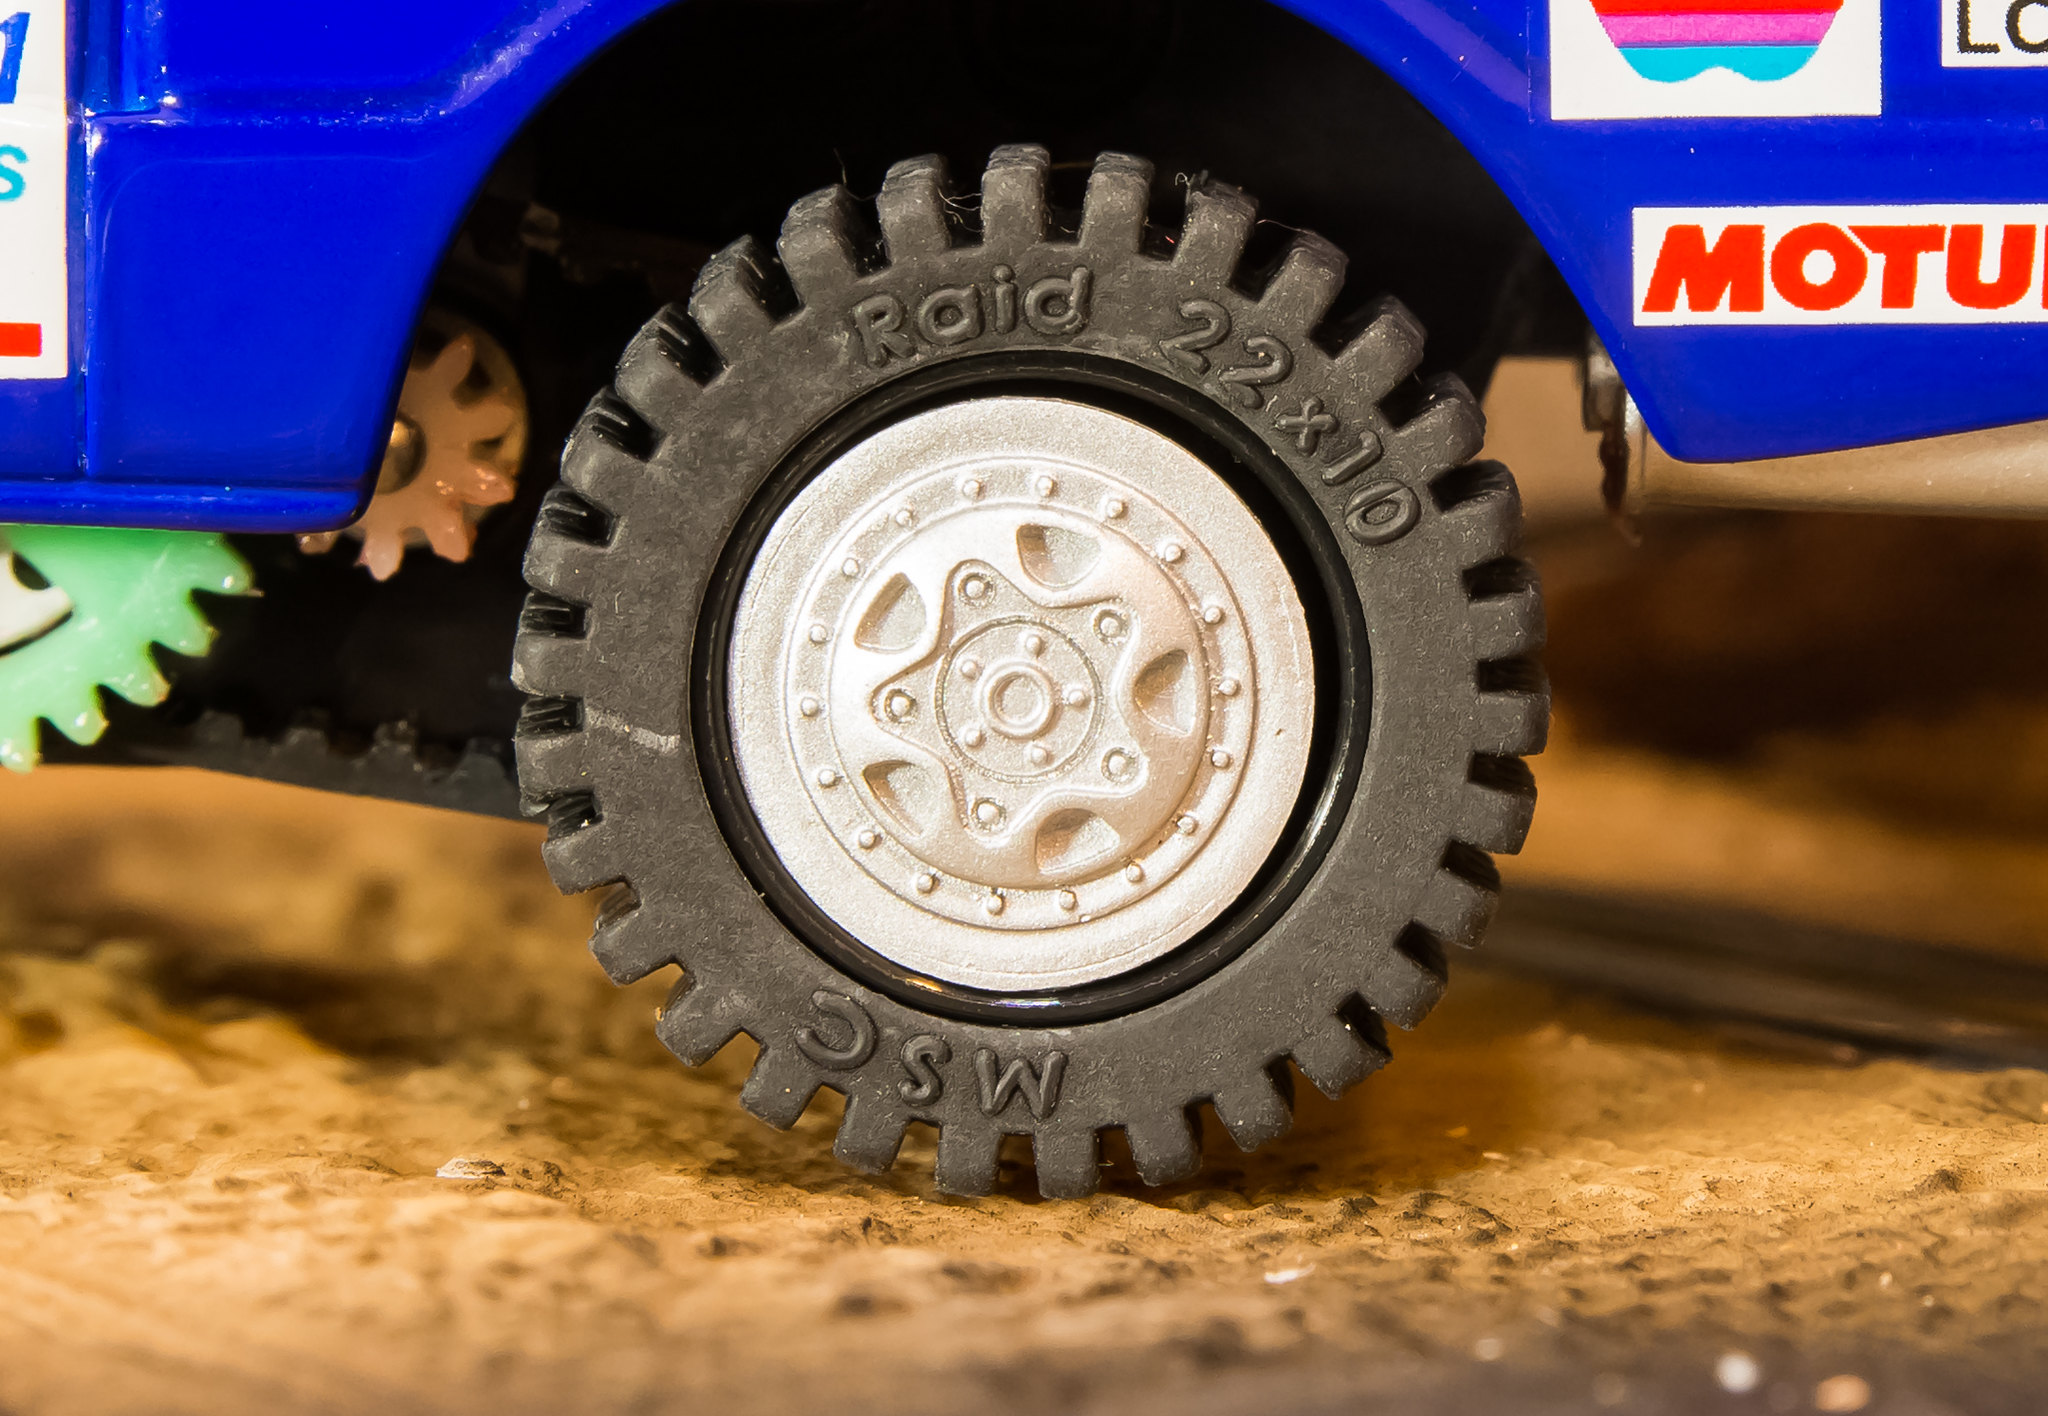 “Range_Rover_Dakar_1991”